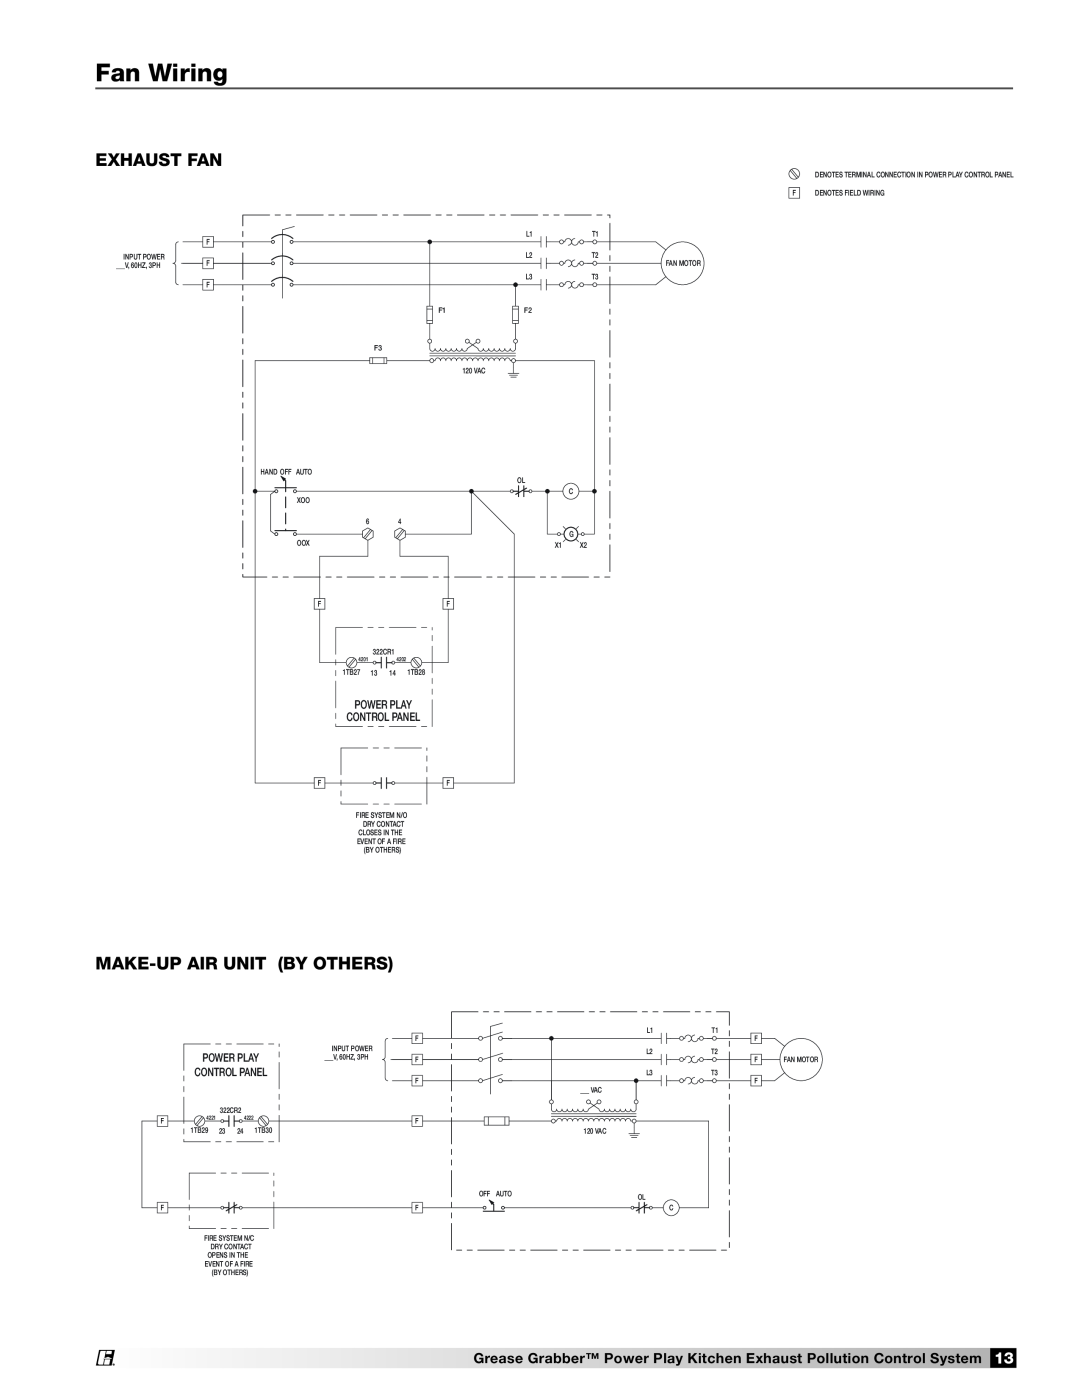 Greenheck Fan 474754 installation manual Fan Wiring, Exhaust Fan, Make-Upair Unit By Others 